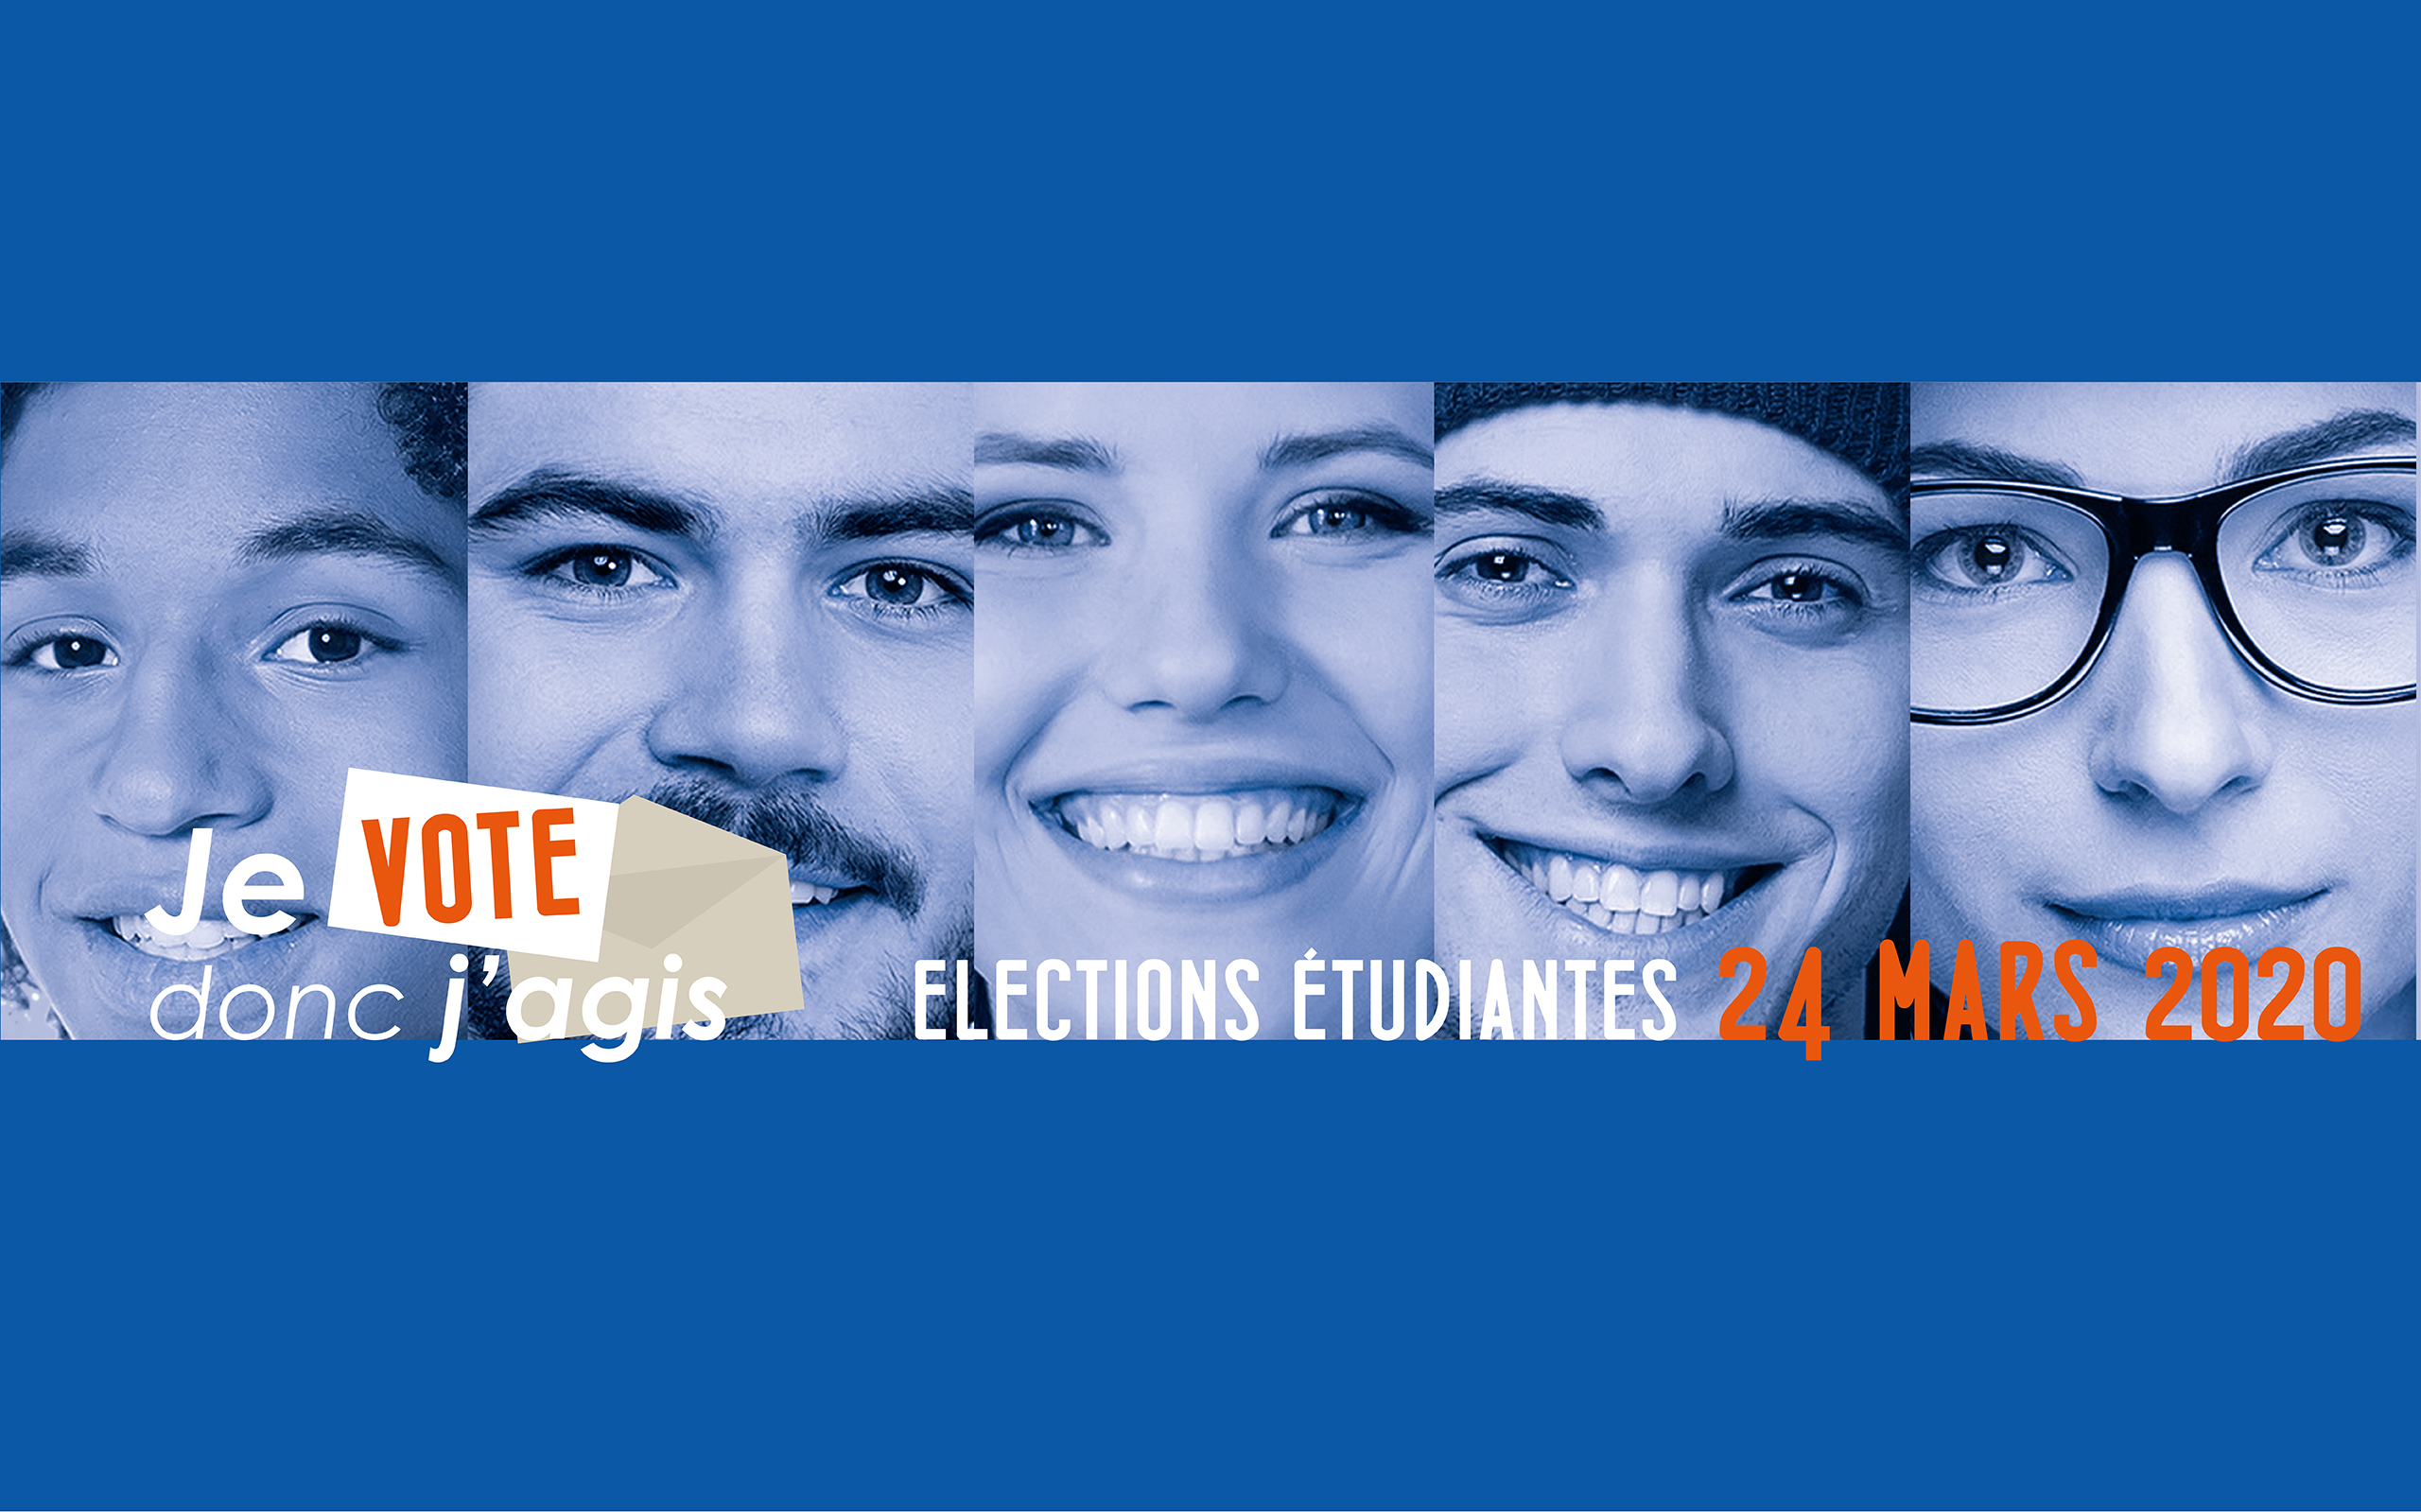 Elections étudiantes 24 MARS 2020 